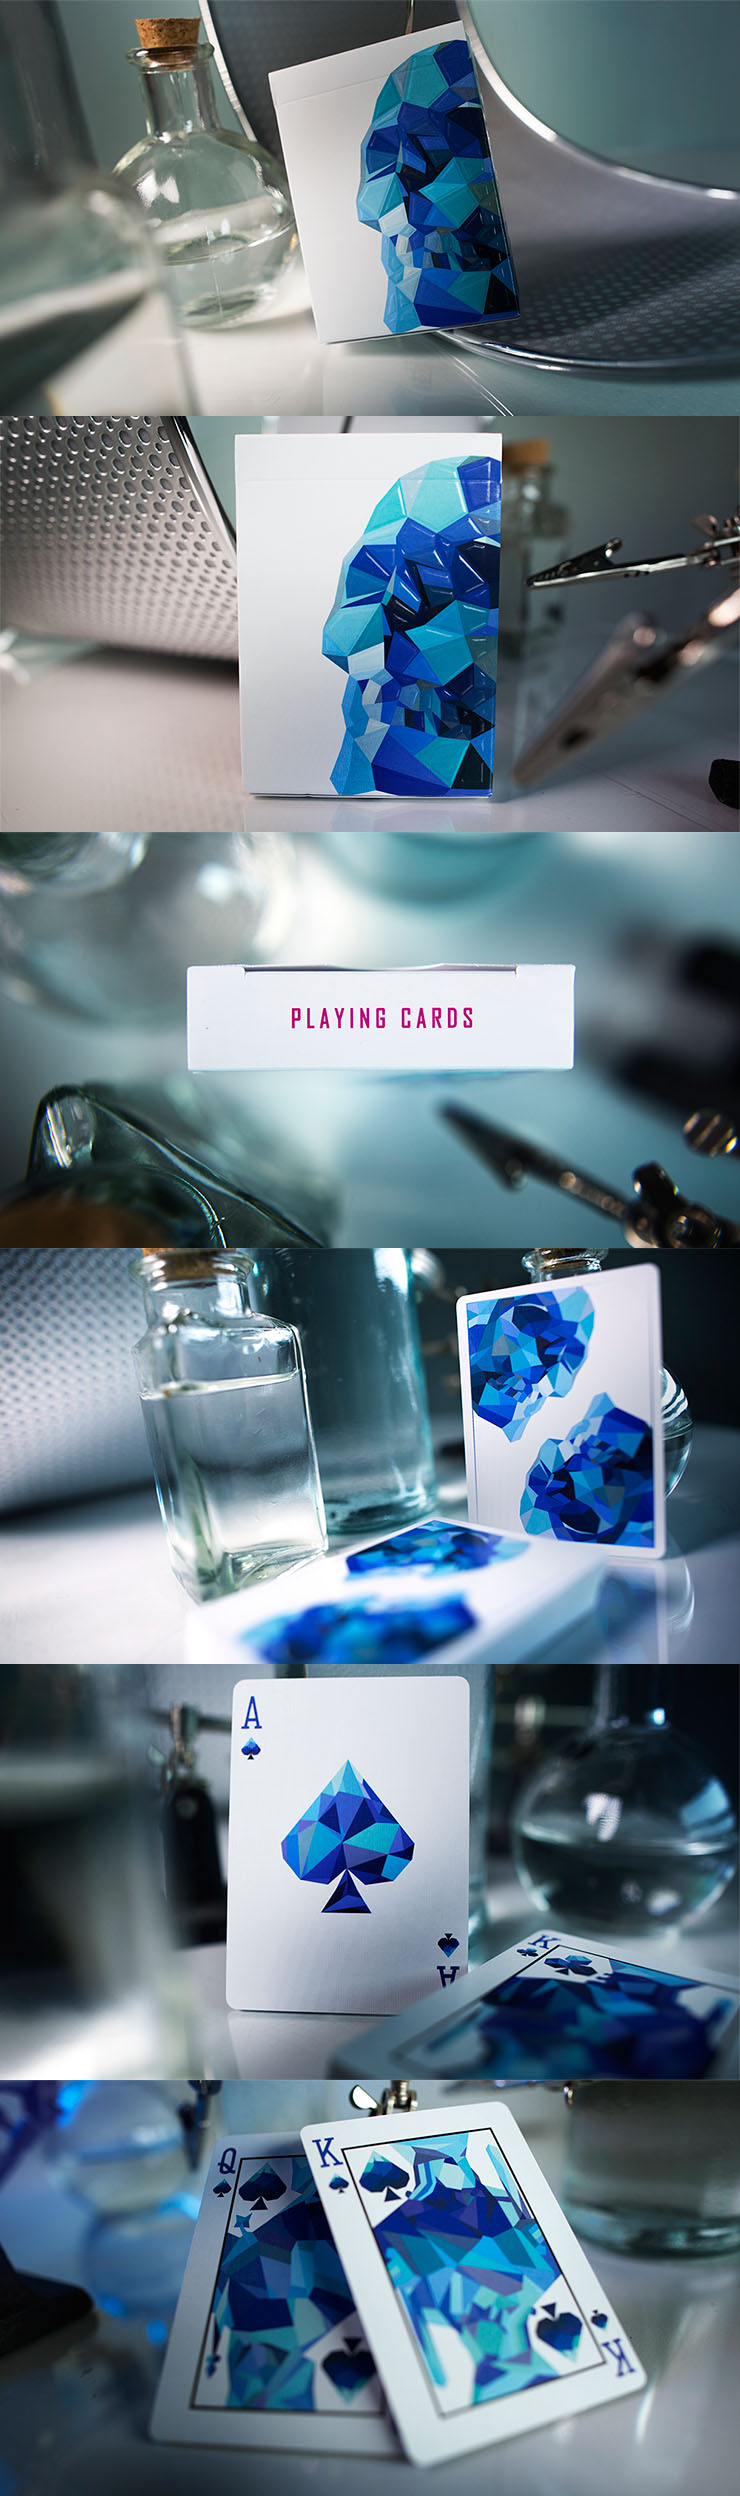 (메멘토모리-블루) Memento Mori Blue Playing Cards 12,000원 - 유매직 키덜트/취미, 마술용품/타로카드, 카드마술, 카드마술 바보사랑 (메멘토모리-블루) Memento Mori Blue Playing Cards 12,000원 - 유매직 키덜트/취미, 마술용품/타로카드, 카드마술, 카드마술 바보사랑